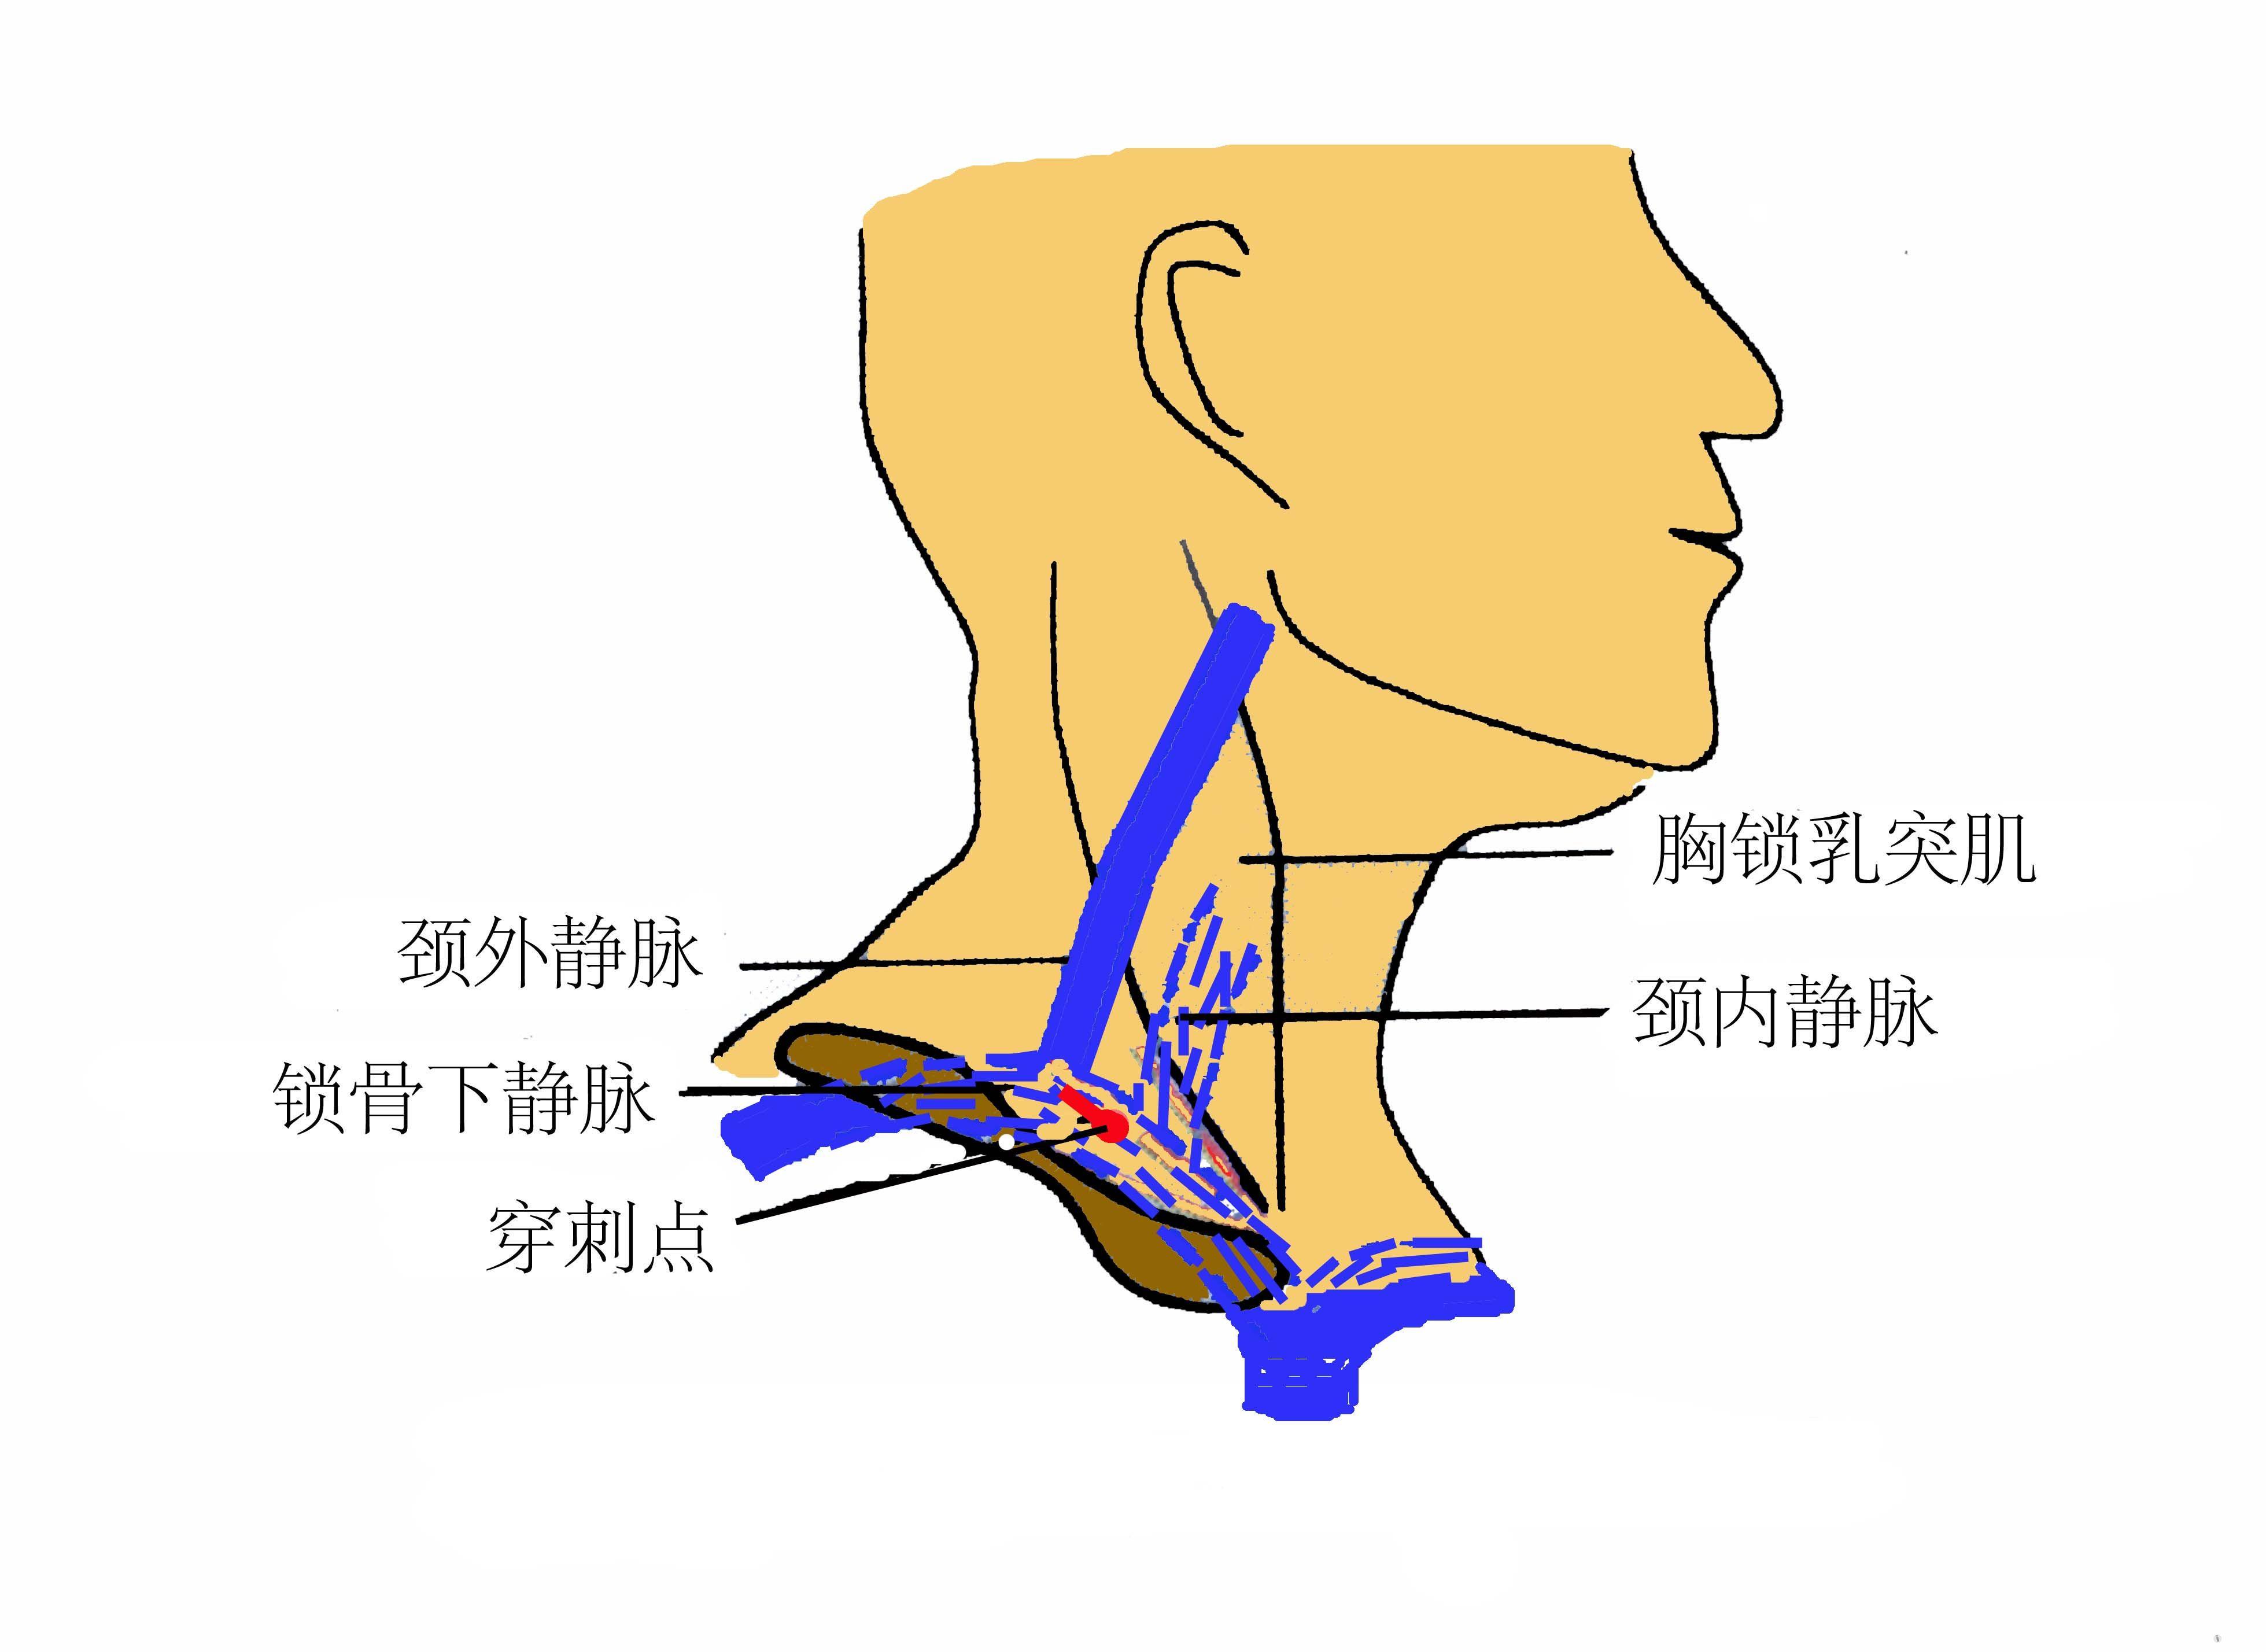 图7-32 锁骨和胸锁关节-基础医学-医学